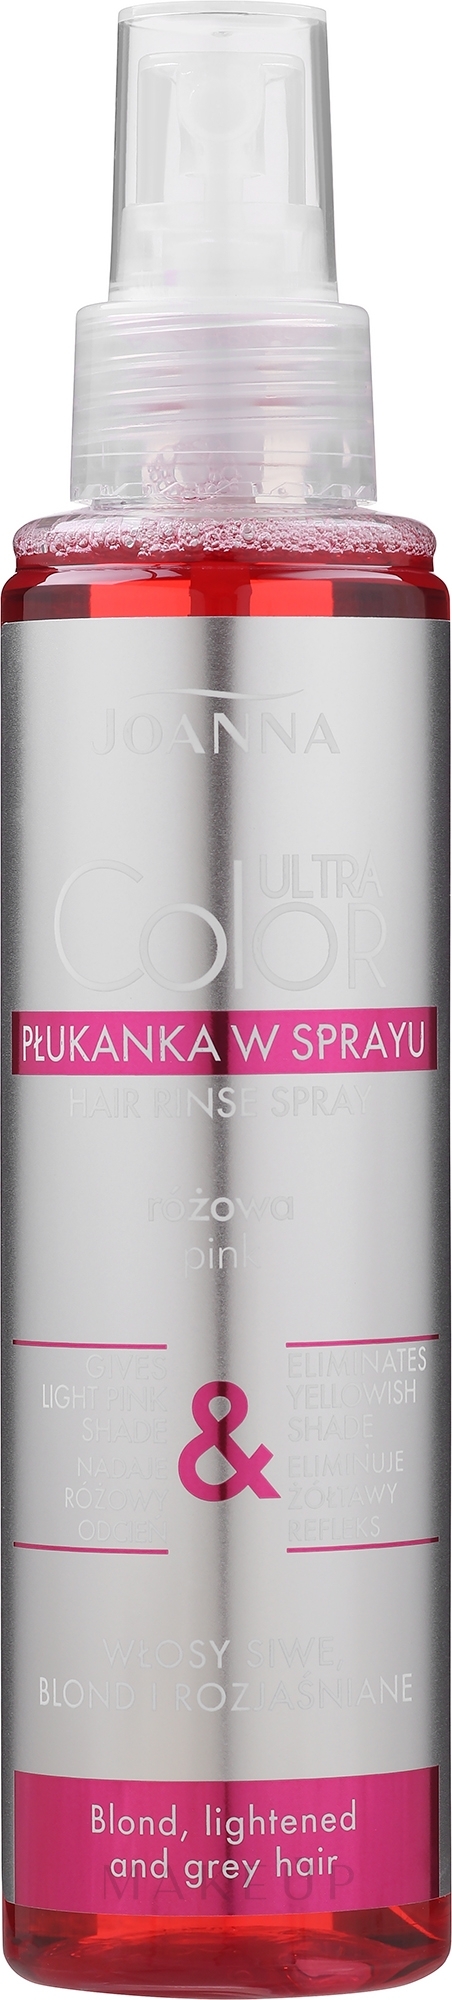 Rosa Tönungsspray für graues, helles und blondiertes Haar - Joanna Ultra Color System Hair Spray Lotion — Foto 150 ml